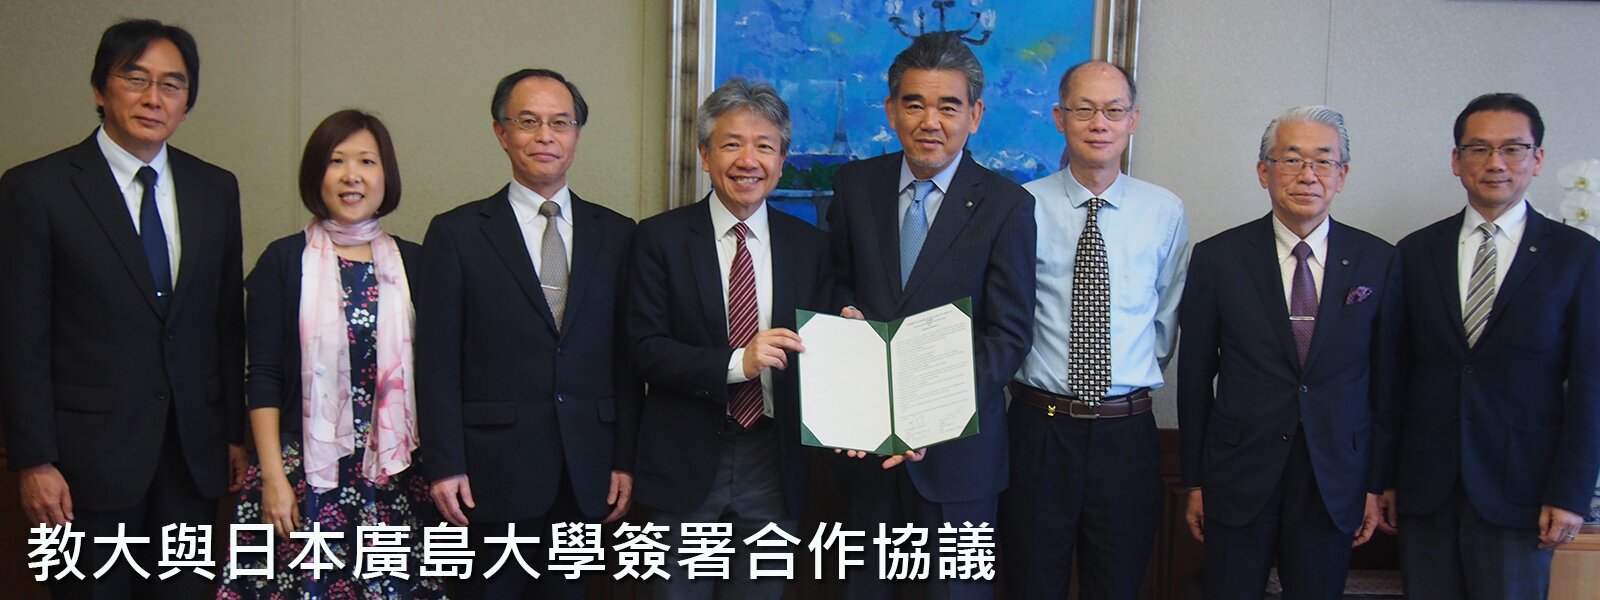 教大與廣島大學簽署合作協議